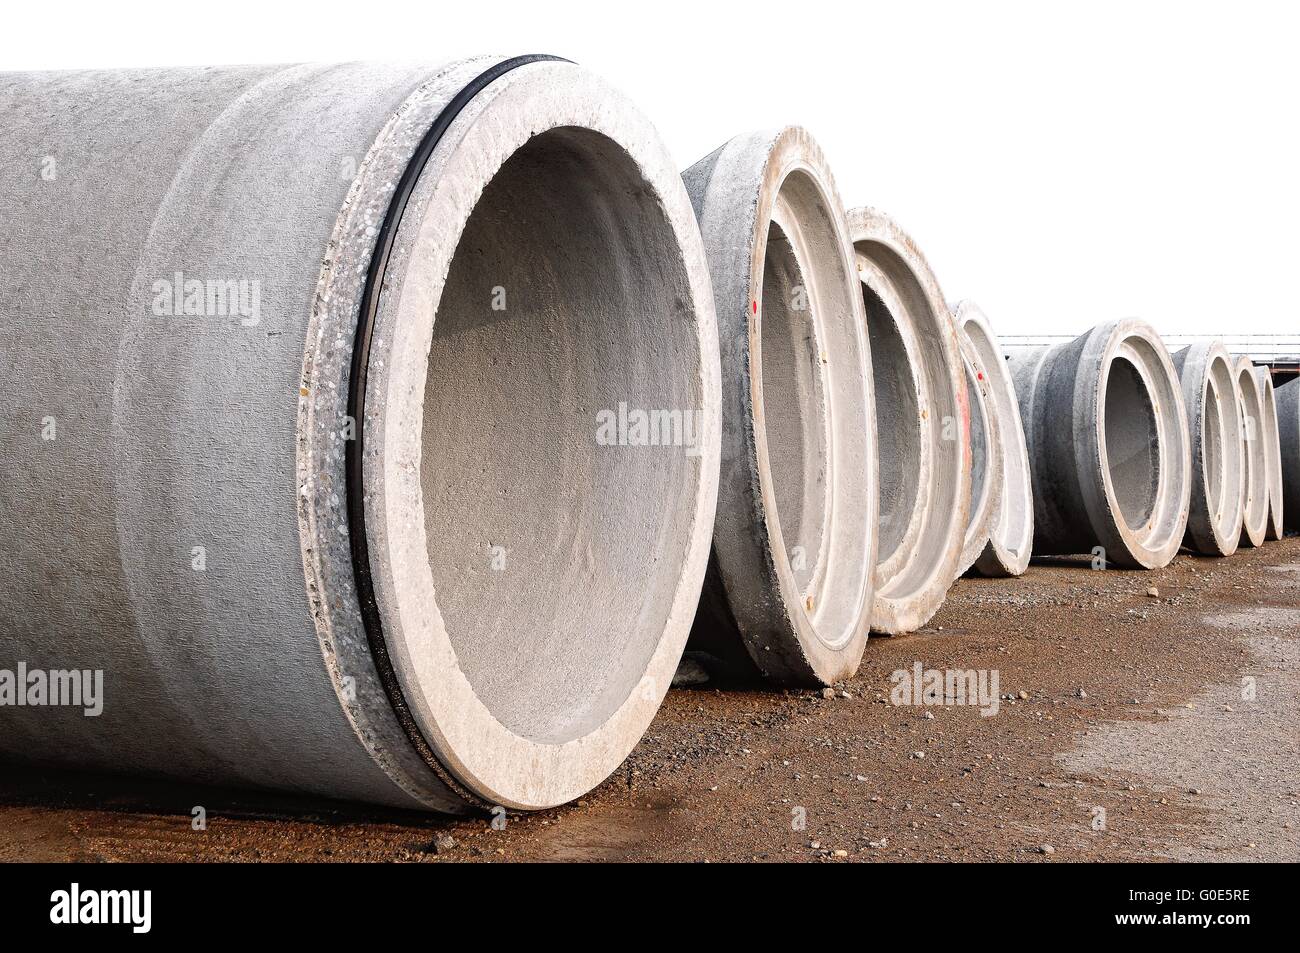 Spun concrete pipes on the edge Stock Photo